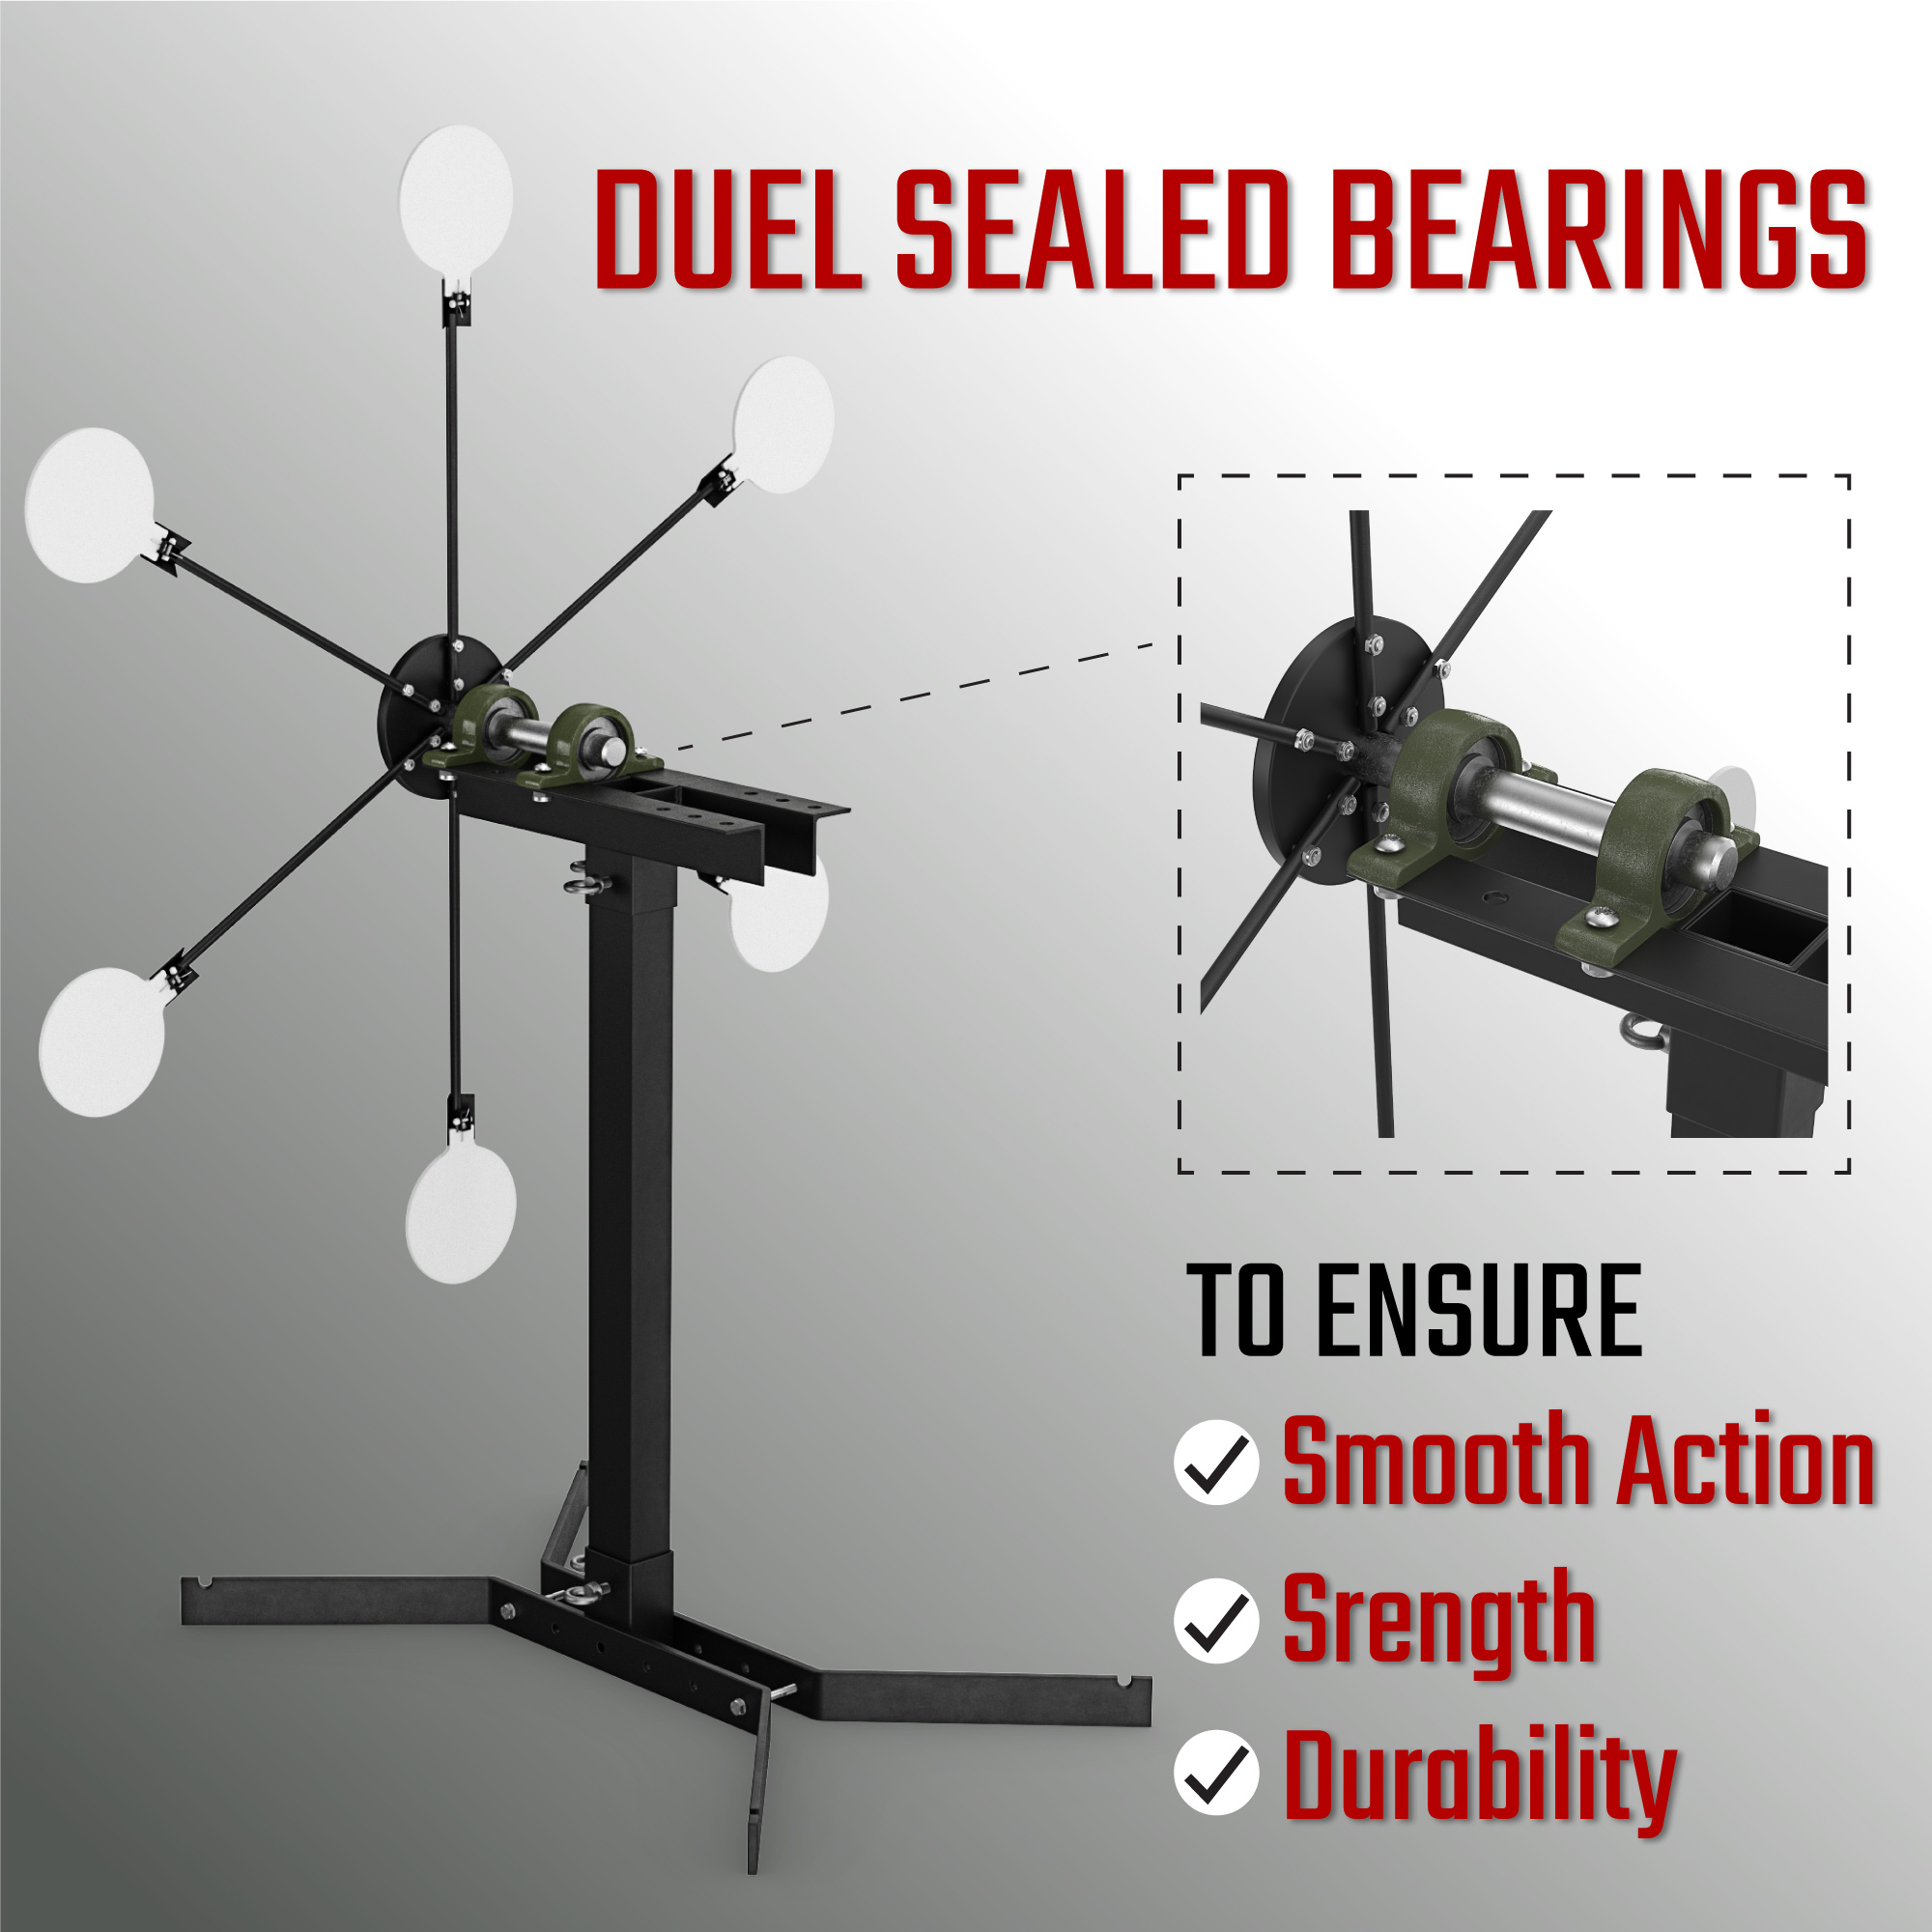 Duel Sealed Bearings